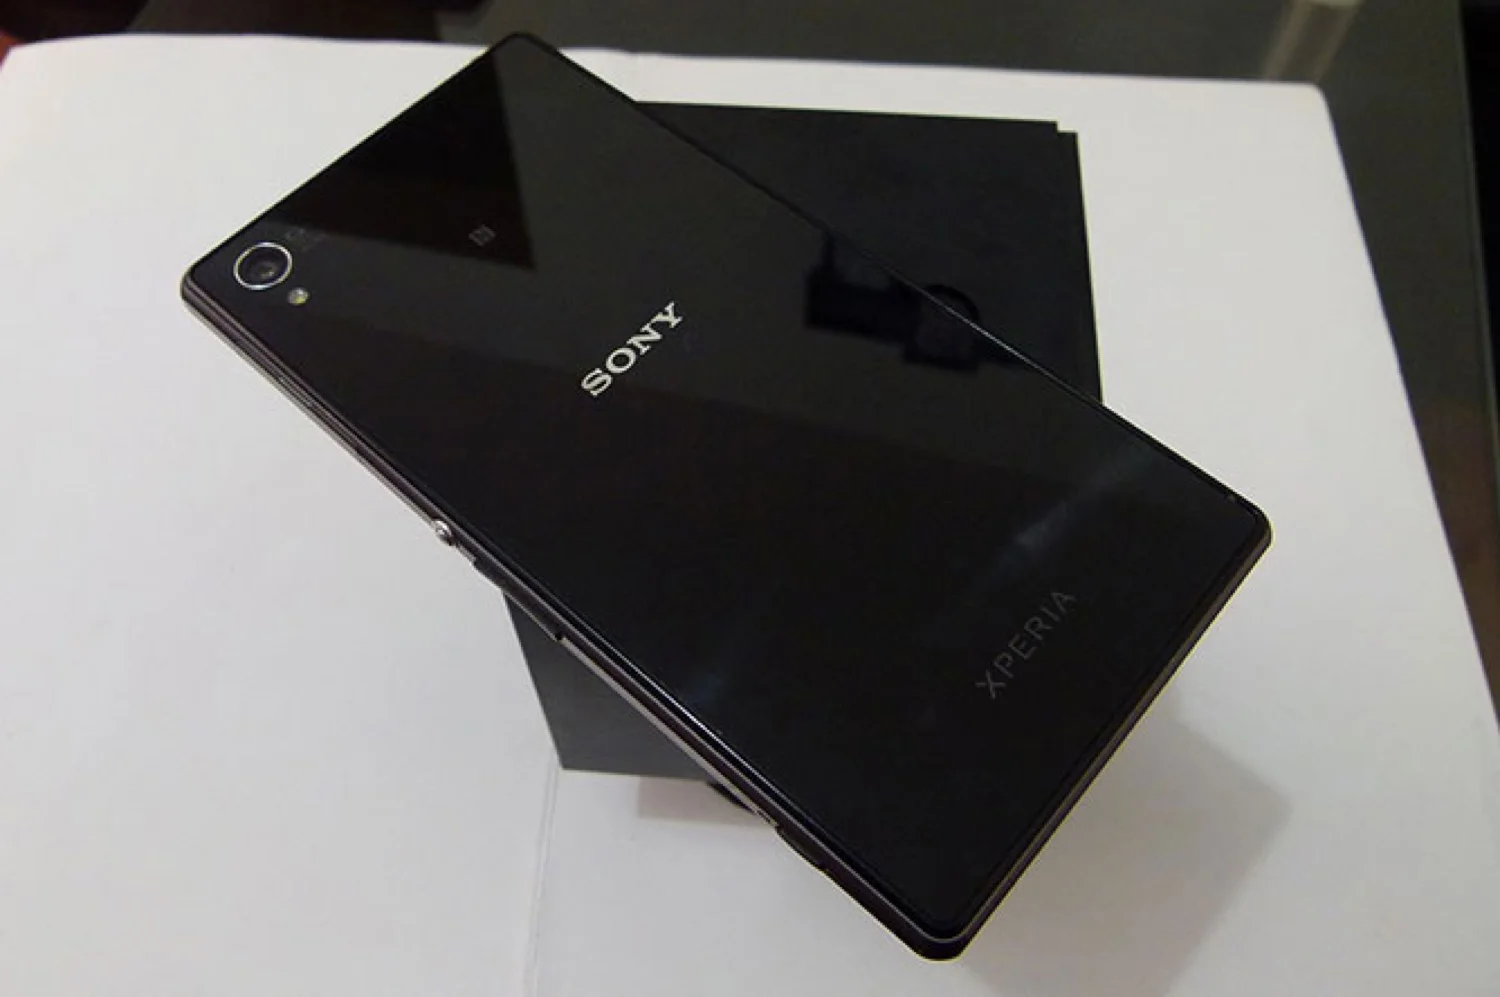 Review del smartphone Sony Xperia Z1 y accesorios